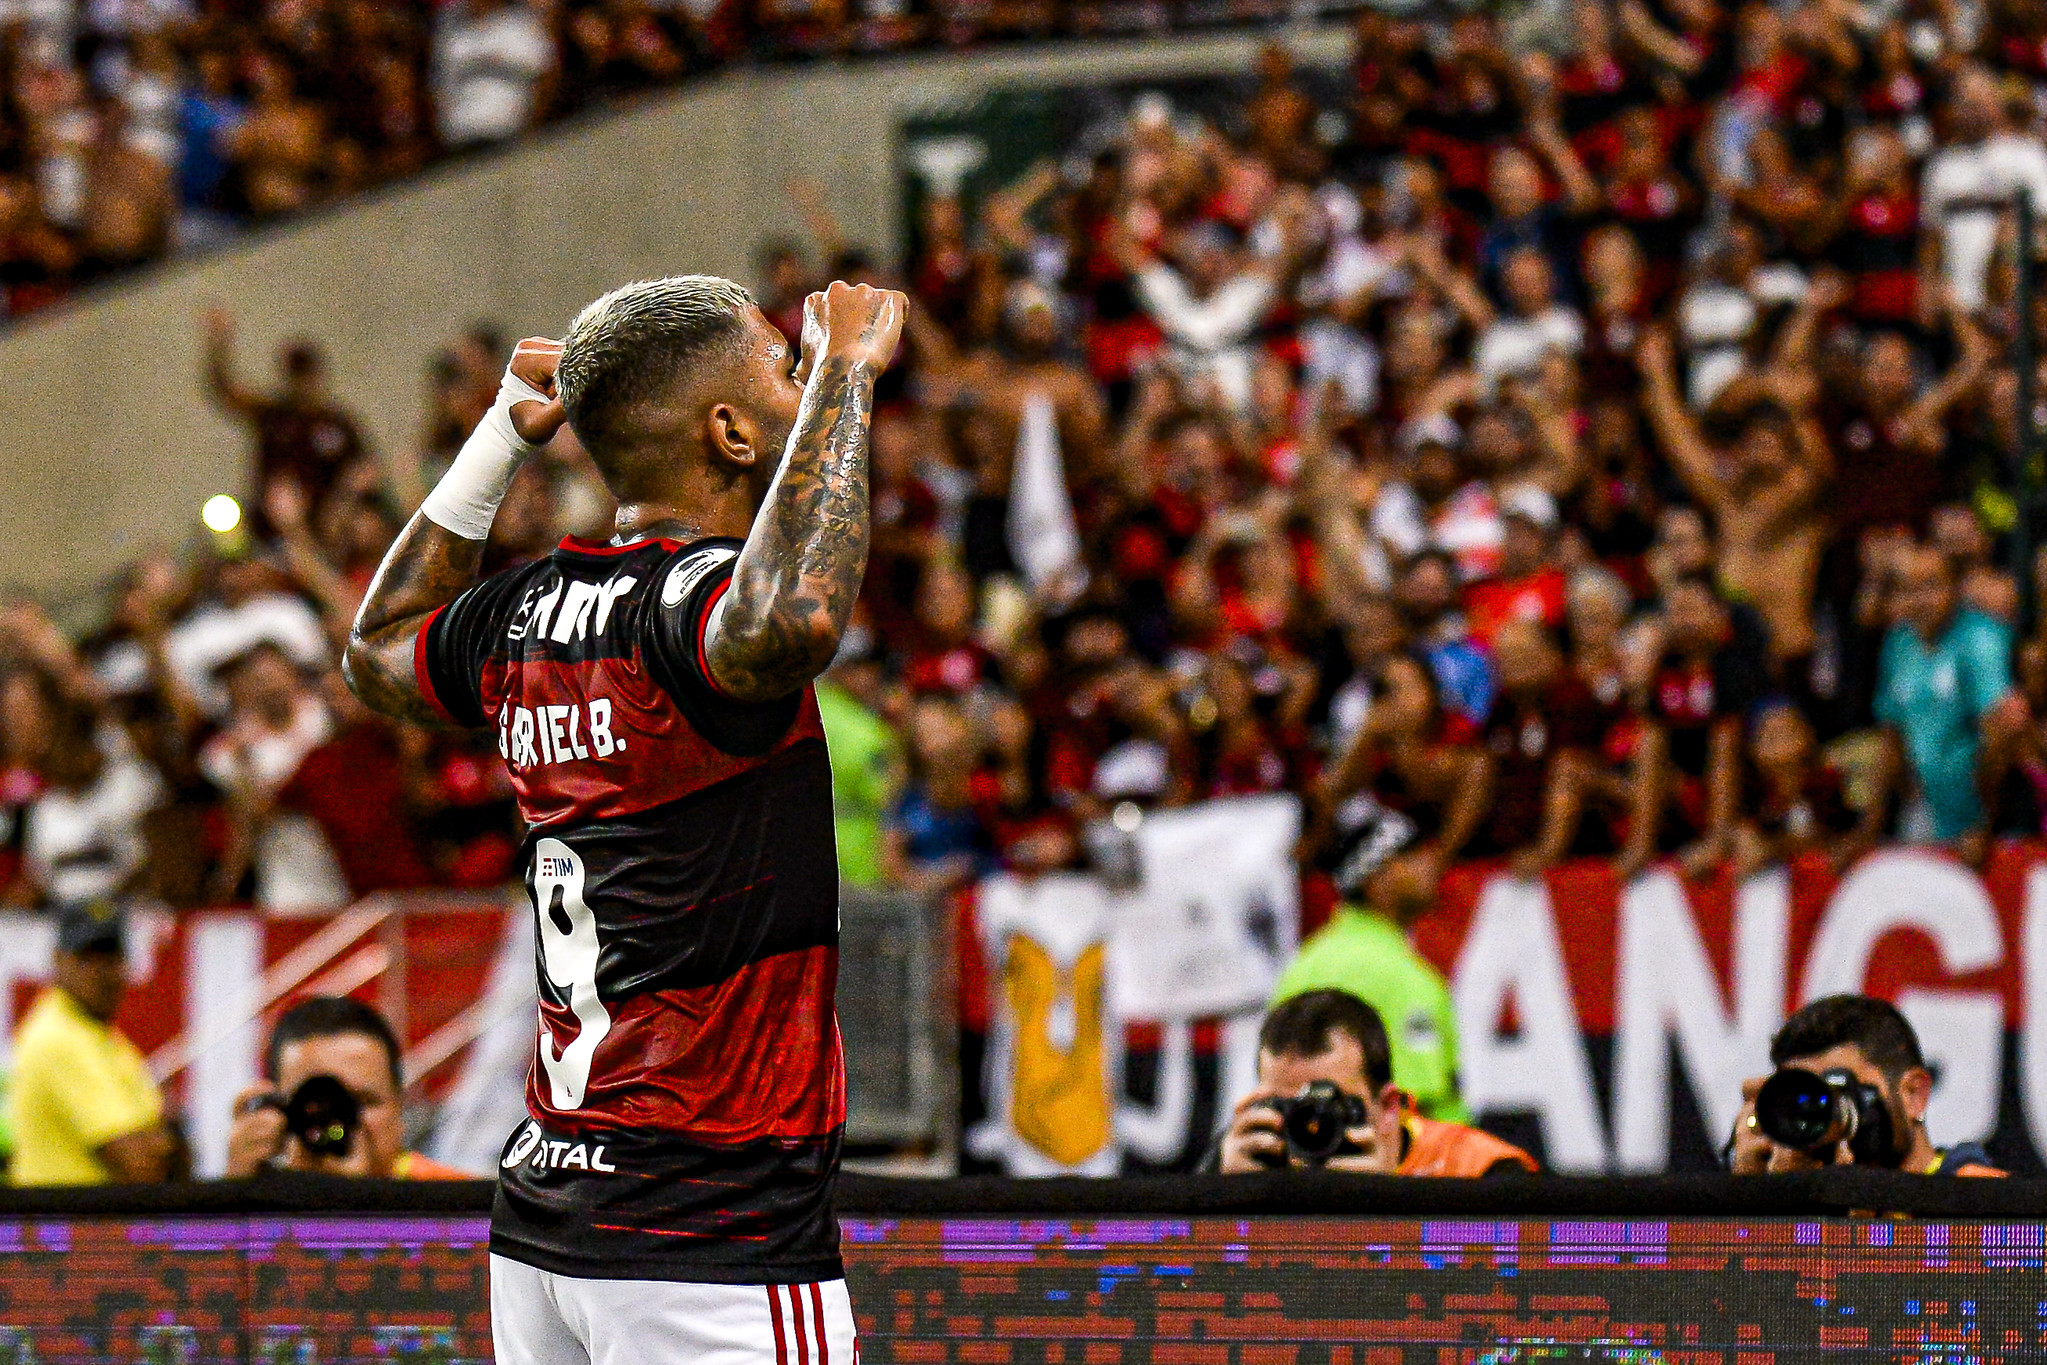 1º - O Flamengo segue um ritmo forte de crescimento, com 880 mil inscritos durante o mês de fevereiro. Foi seu segundo melhor desempenho em toda a série histórica e agora ultrapassa os 29 milhões de inscritos. Outro feito foi o volume de inscritos no YouTube, com 520 mil novas inscrições.